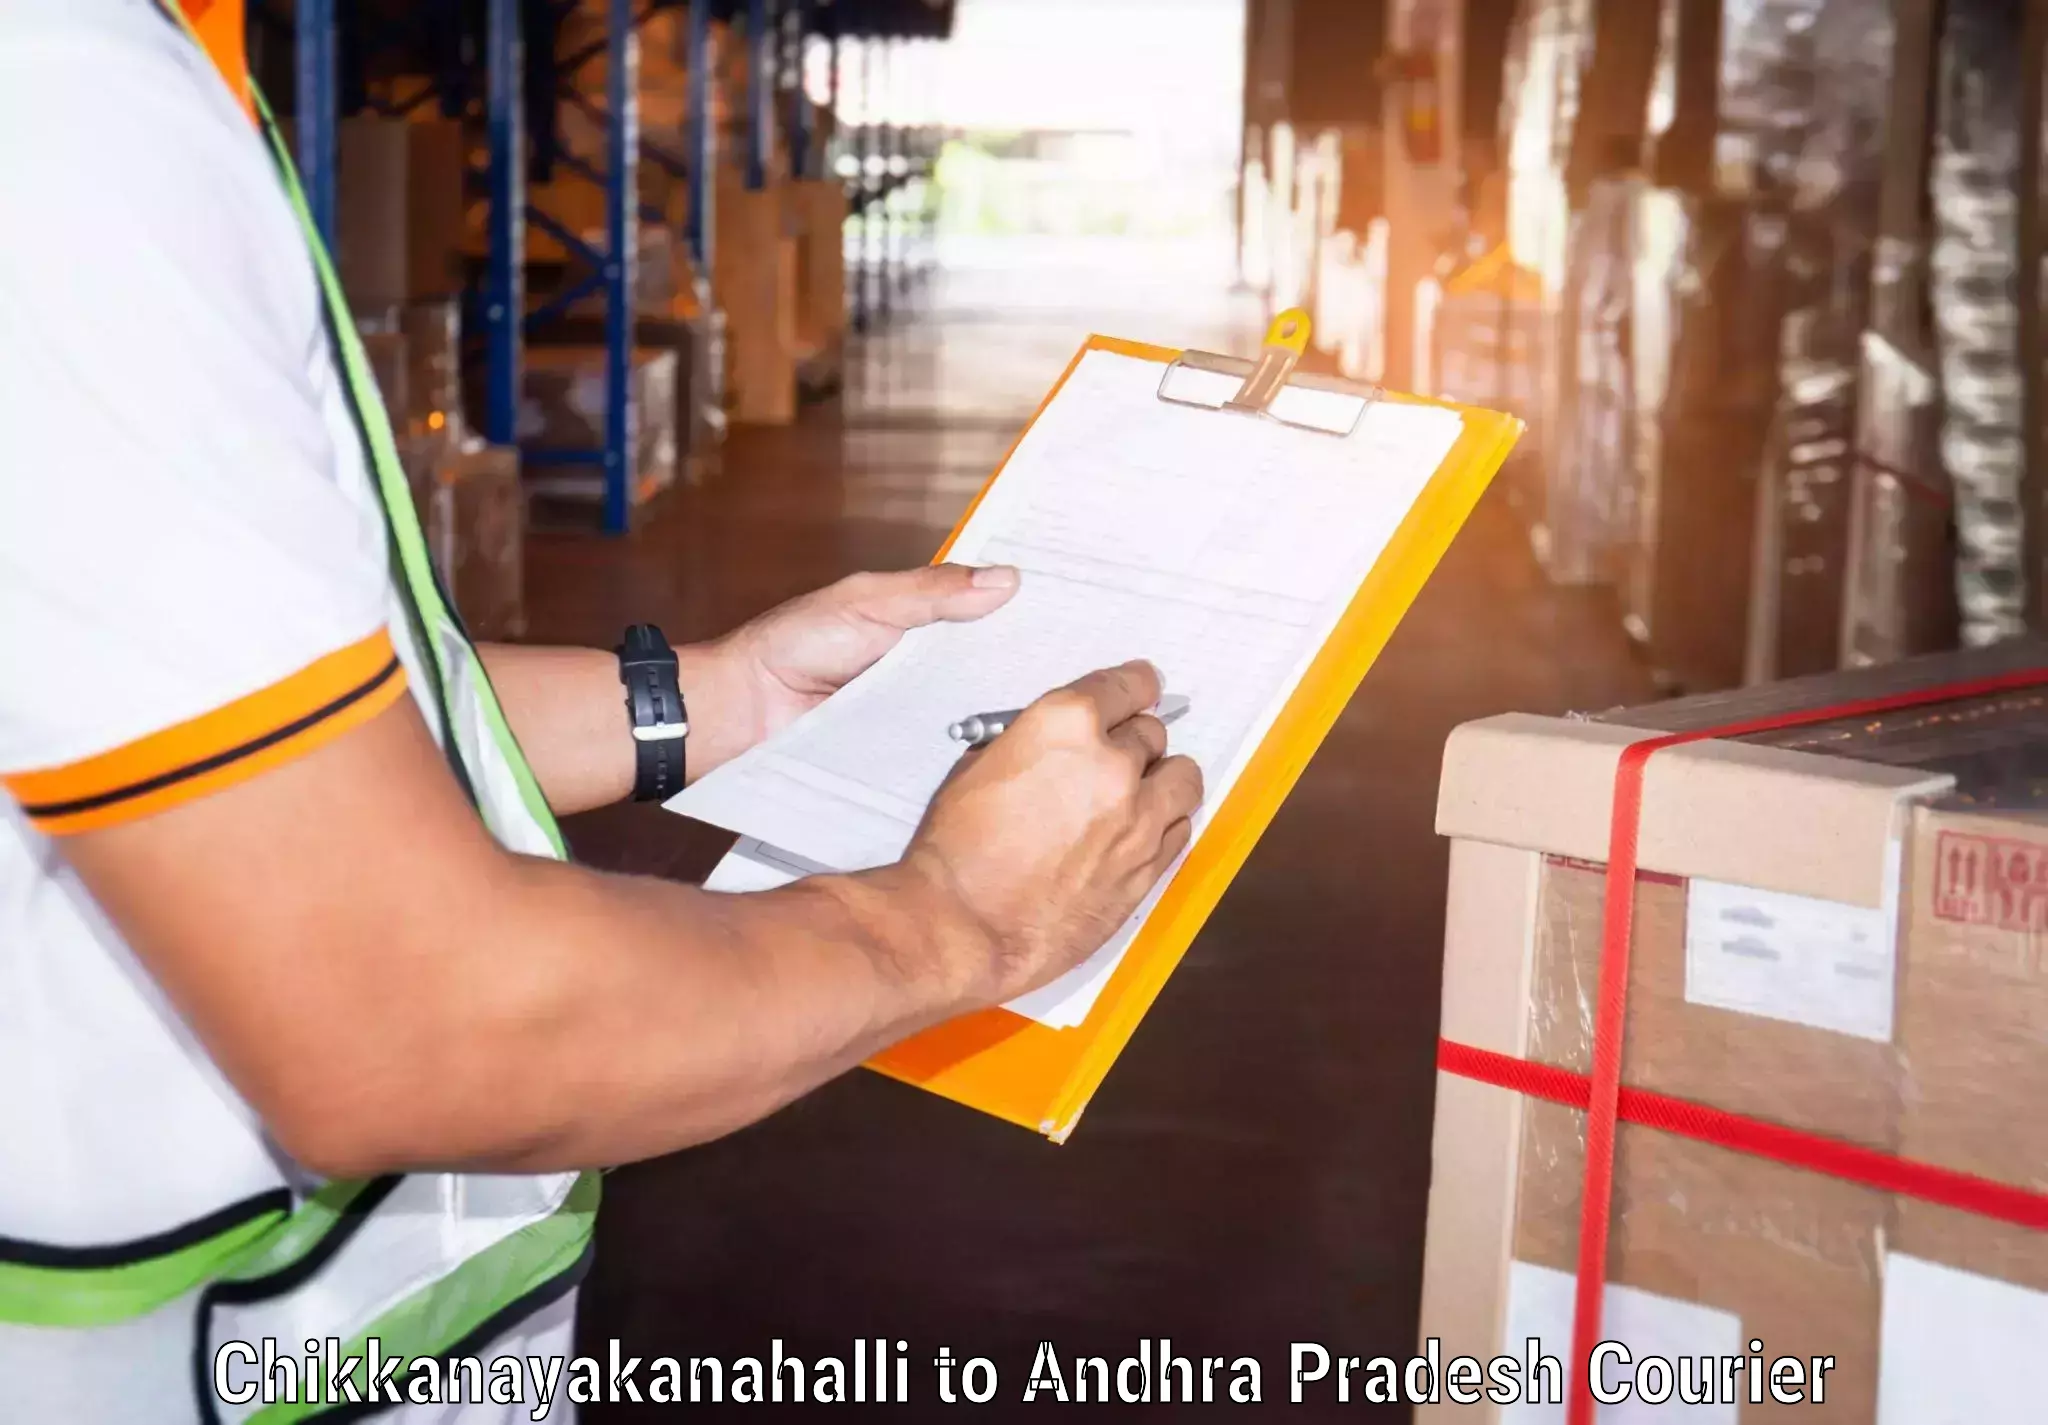 Express logistics Chikkanayakanahalli to Andhra Pradesh